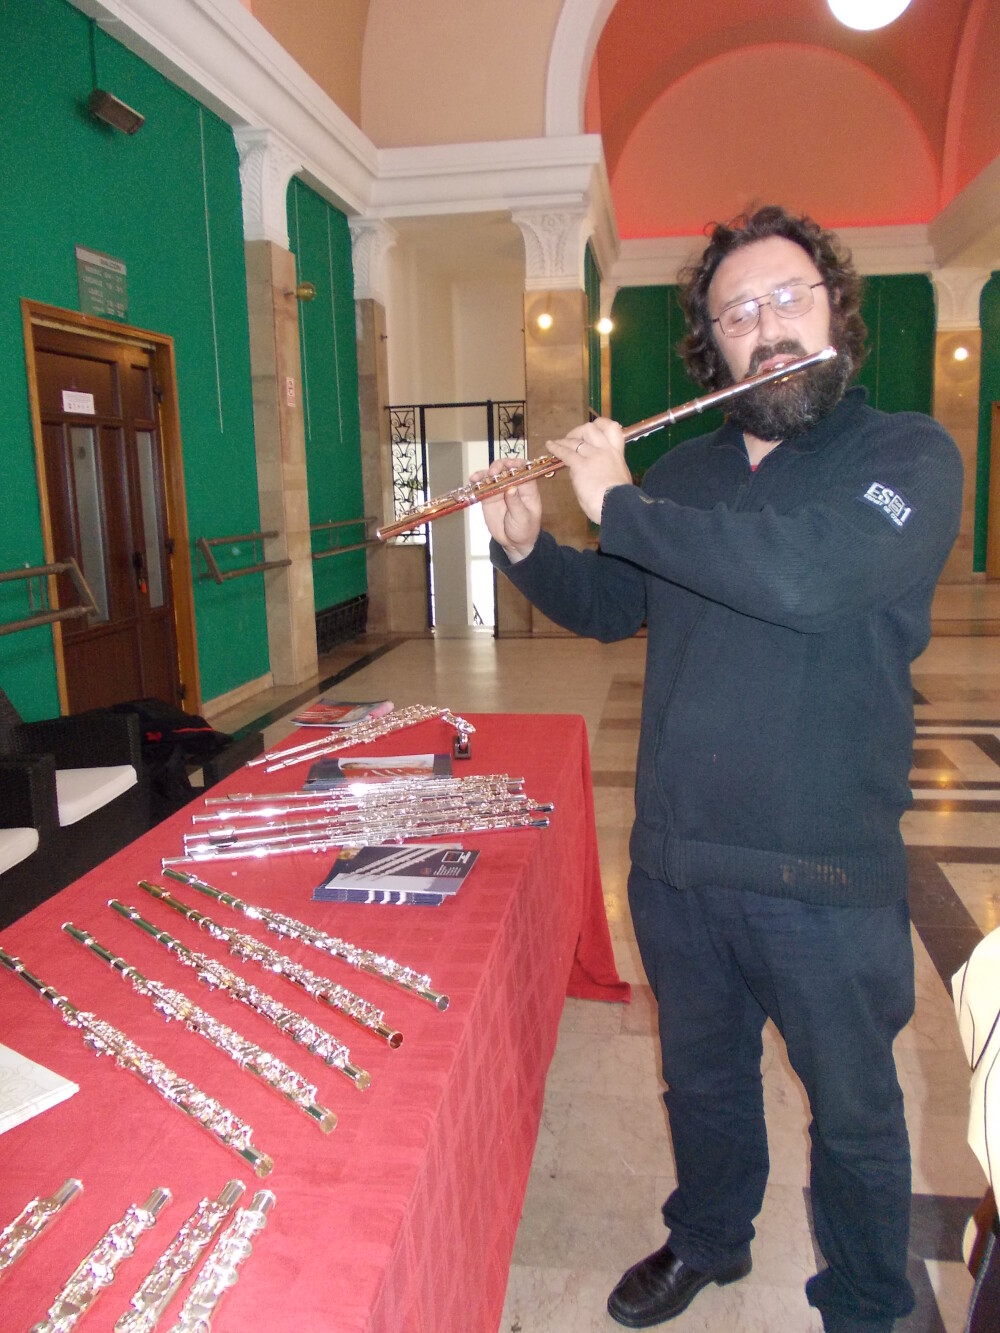 Expozitie de flaute la Filarmonica Banatul. Zeci de instrumente muzicale, testate de timisoreni - Imaginea 4